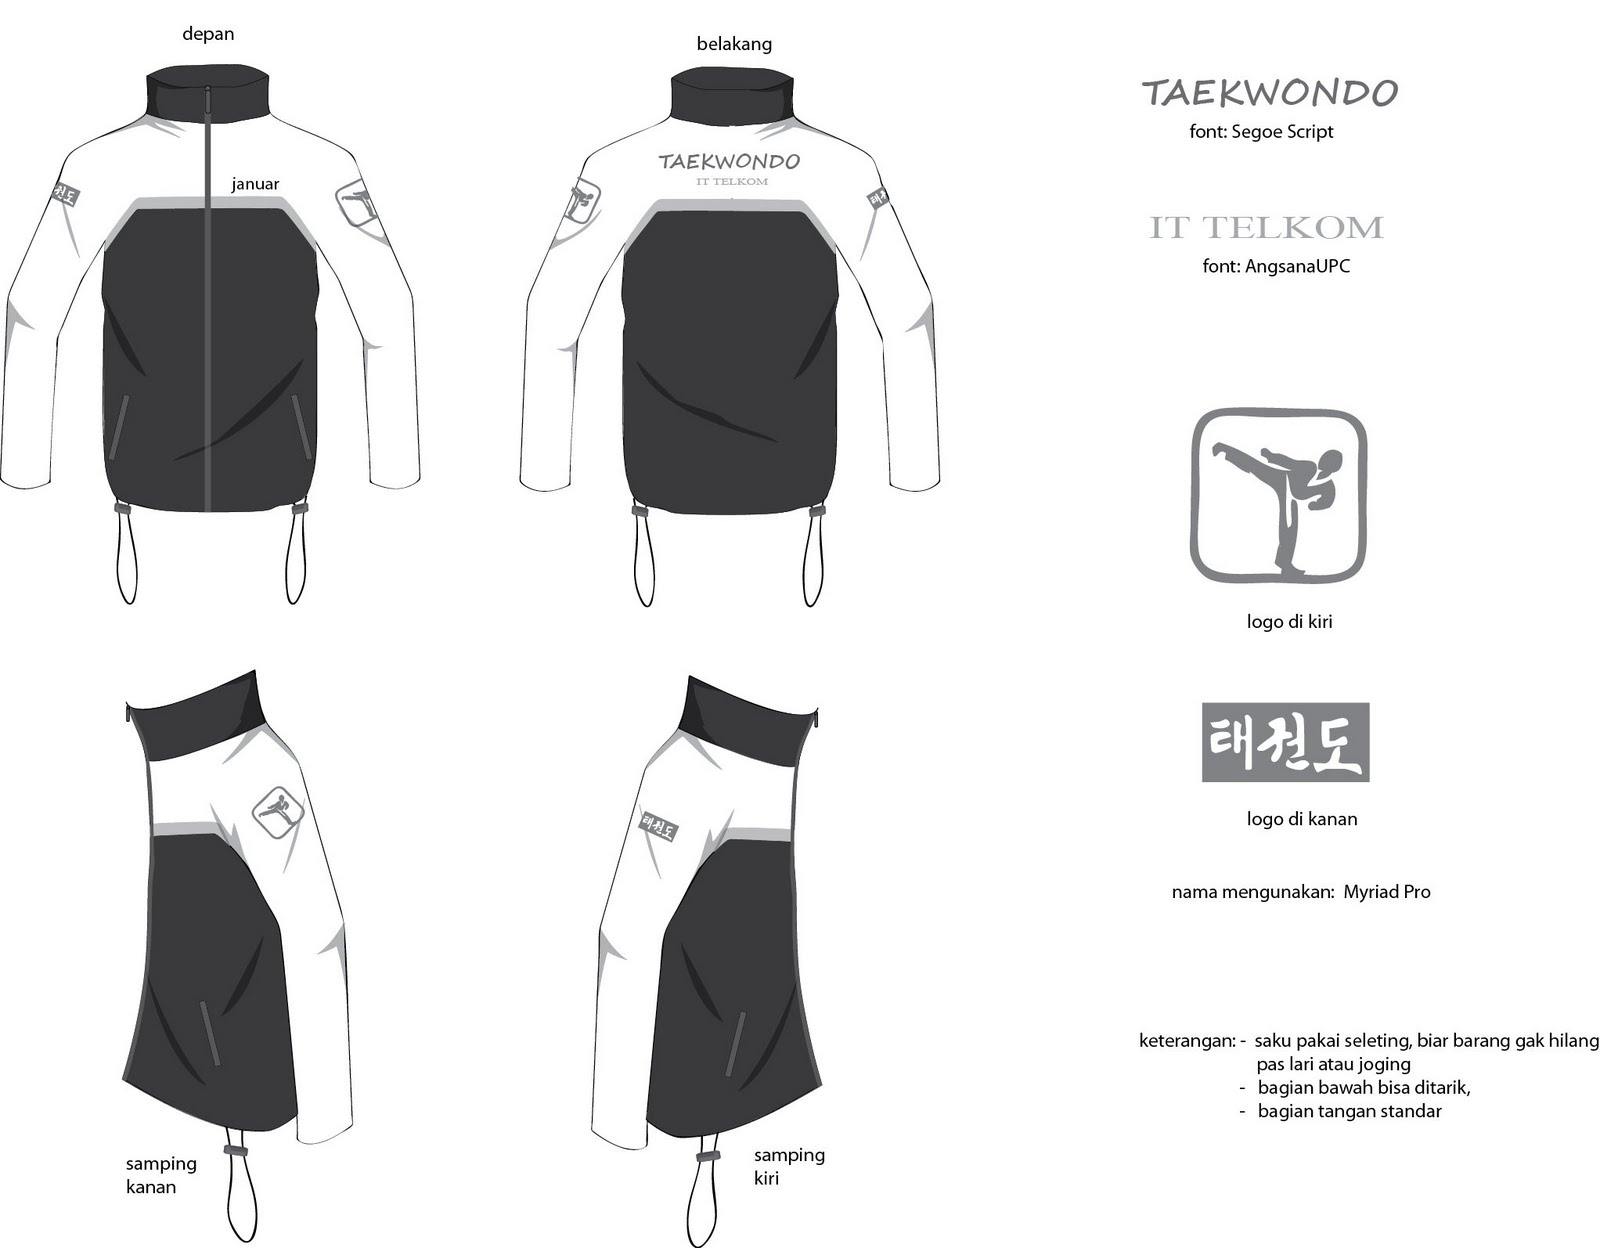 Taekwondo IT Telkom: Desain Jaket Taekwondo